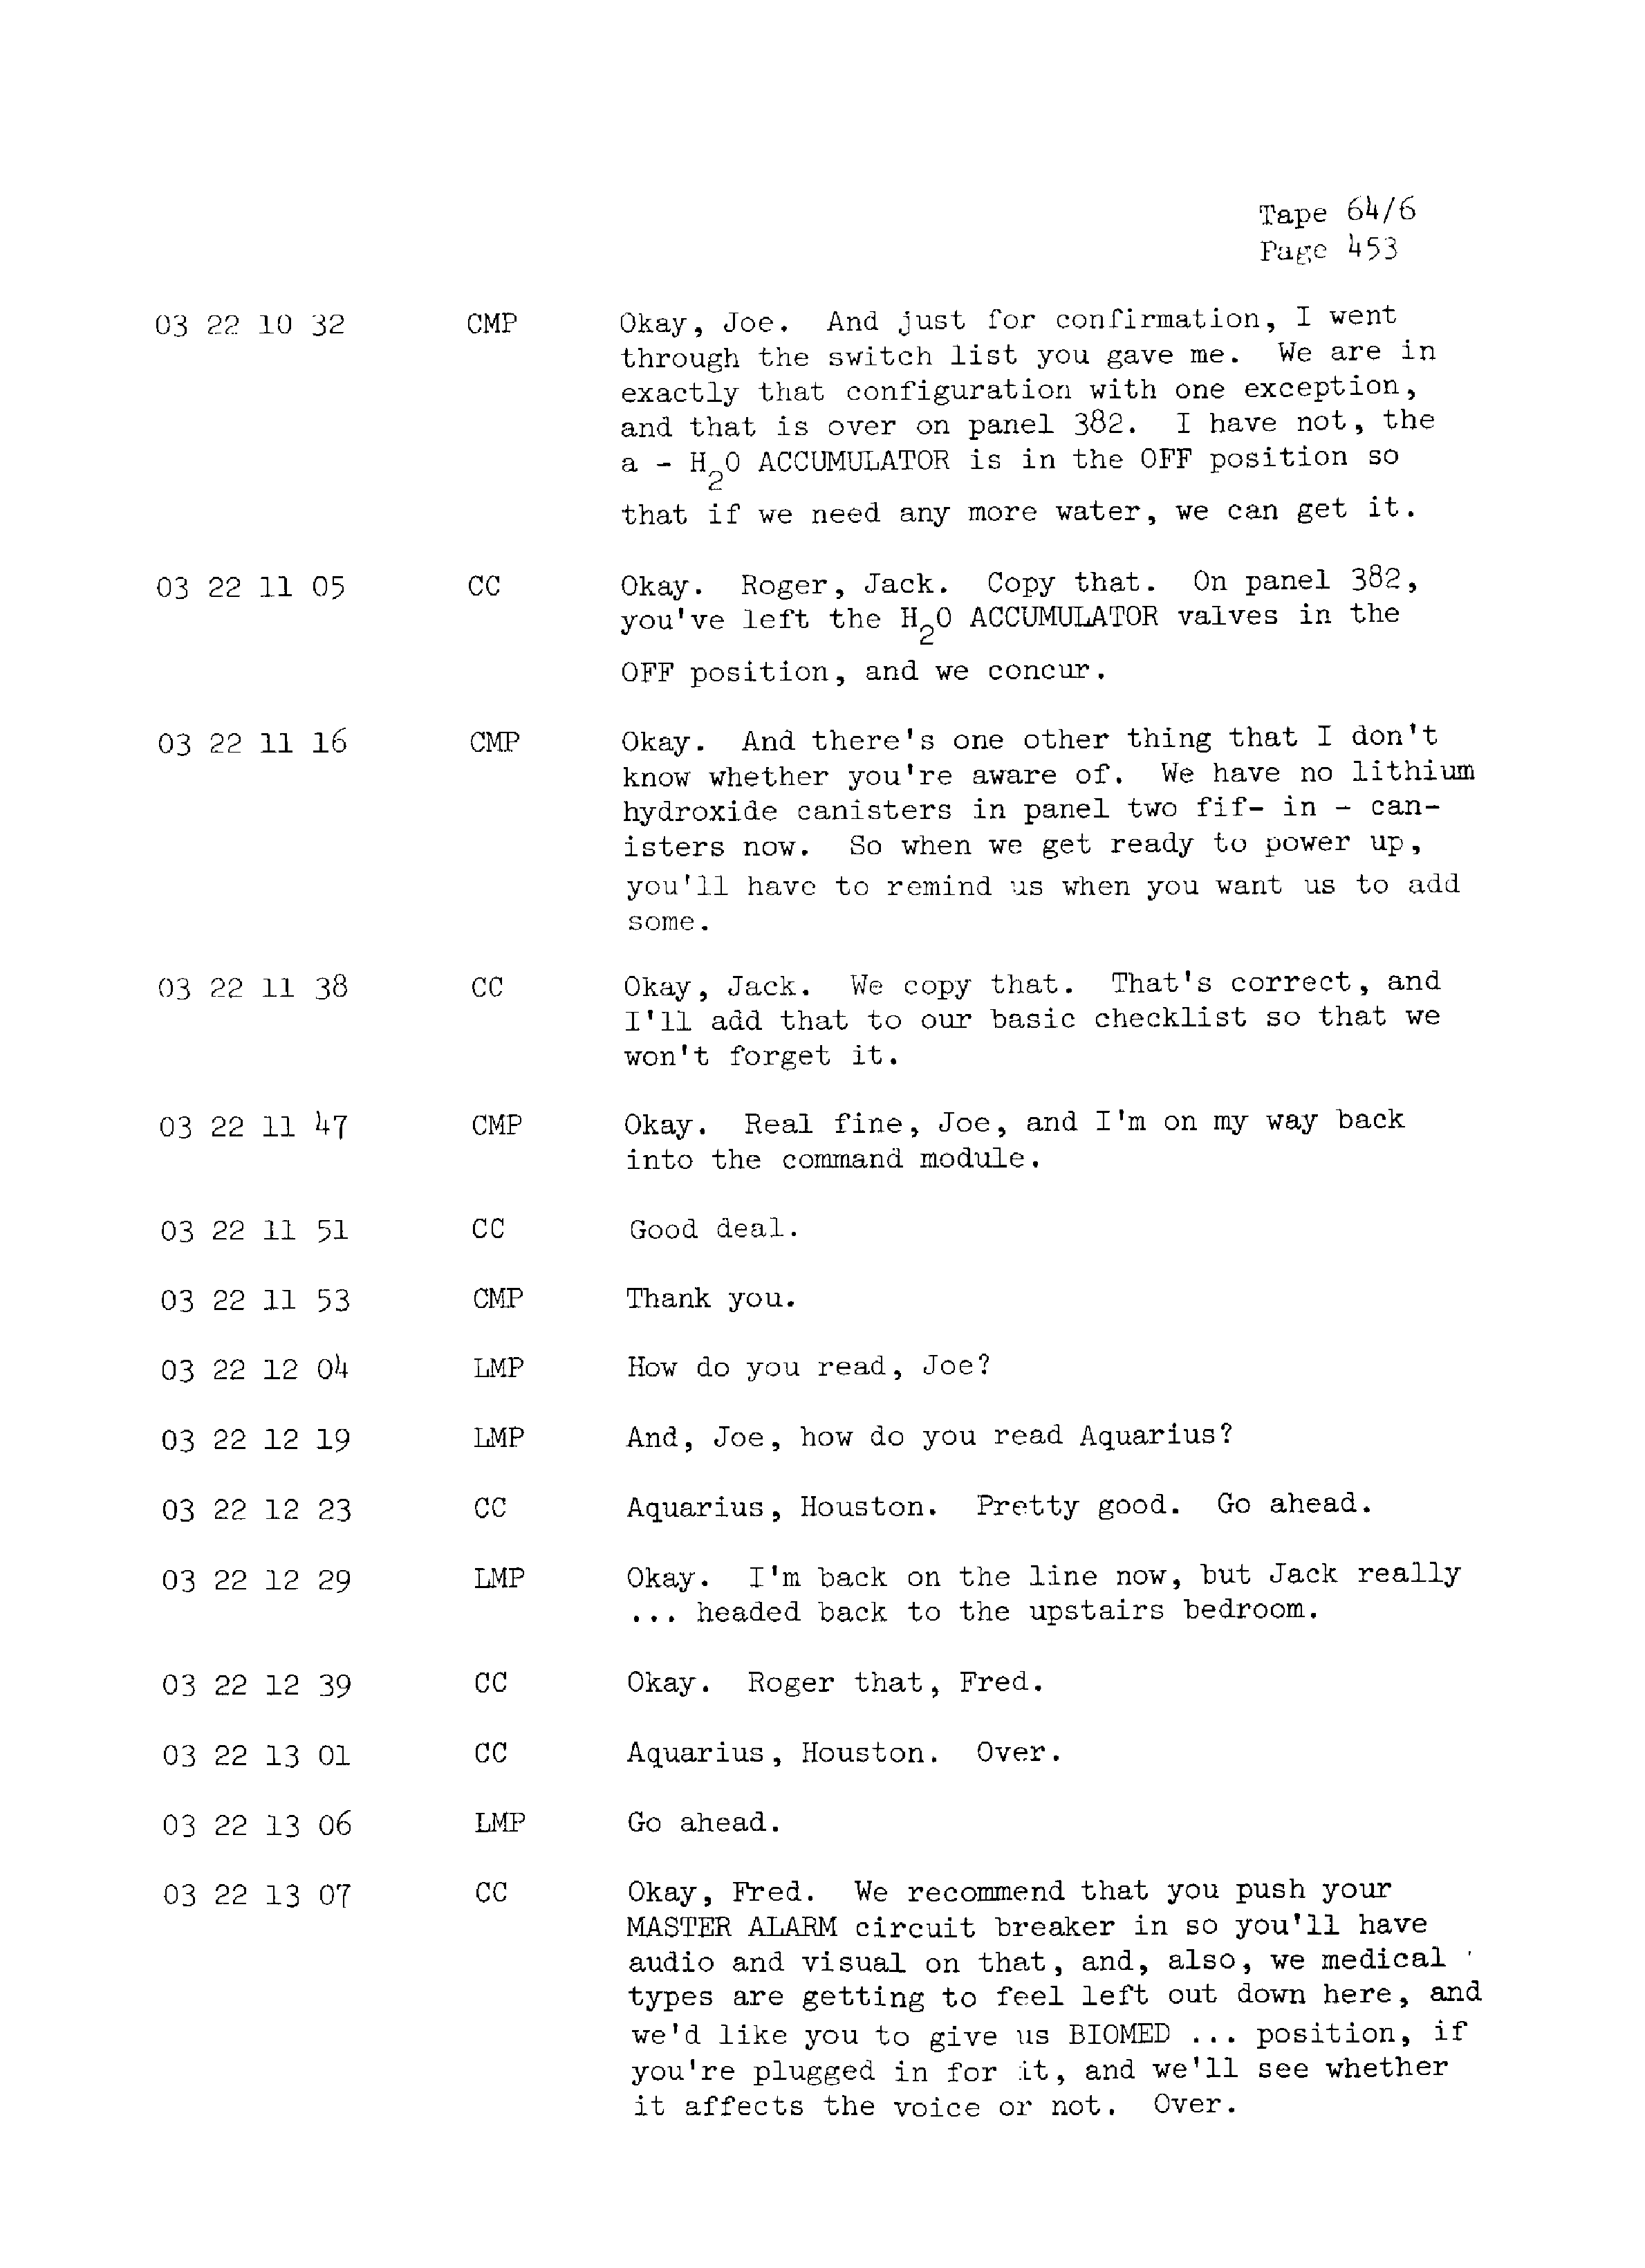 Page 460 of Apollo 13’s original transcript